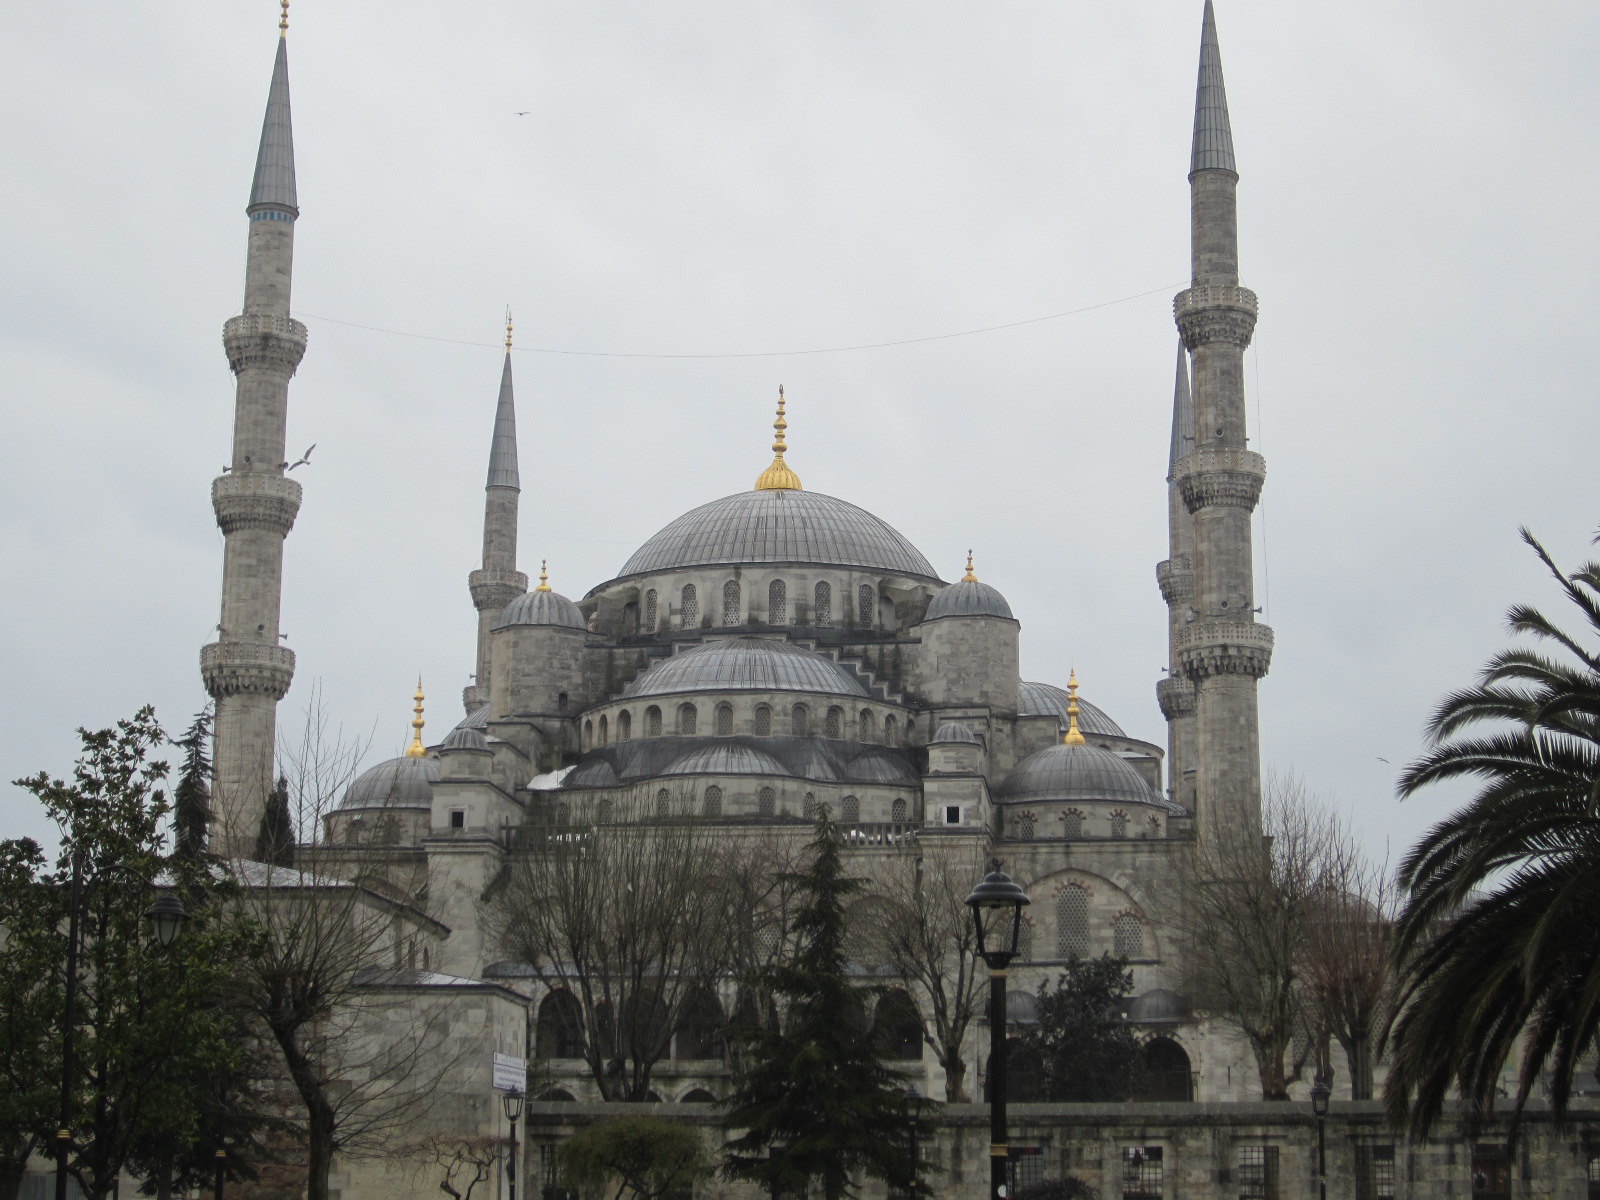 清真寺 土耳其 伊斯坦堡 - Pixabay上的免费照片 - Pixabay